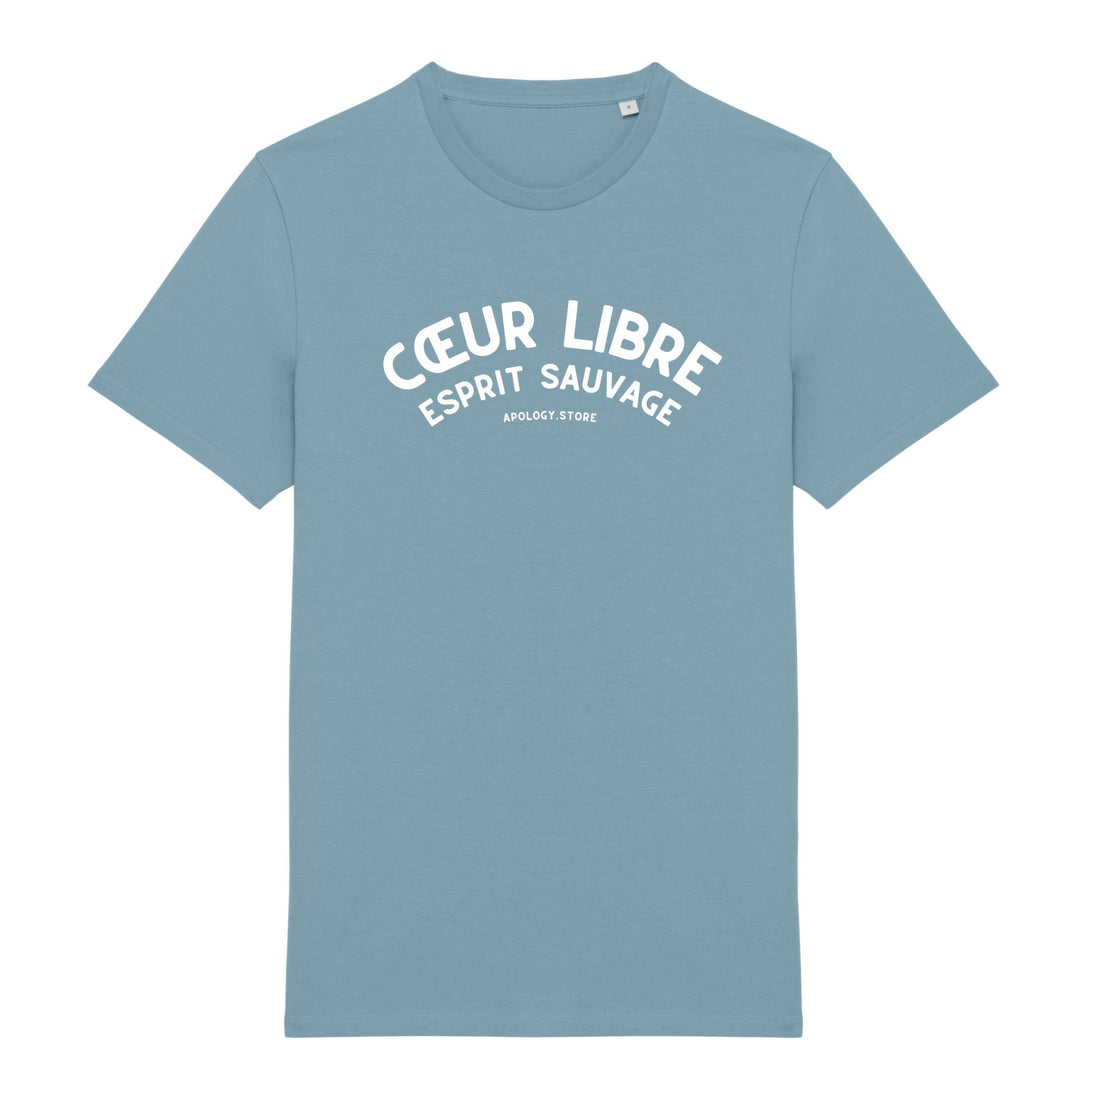 T-shirt Cœur libre, esprit sauvage - Fabriqué au Portugal XS Bleu_arctique - Imprimé en France